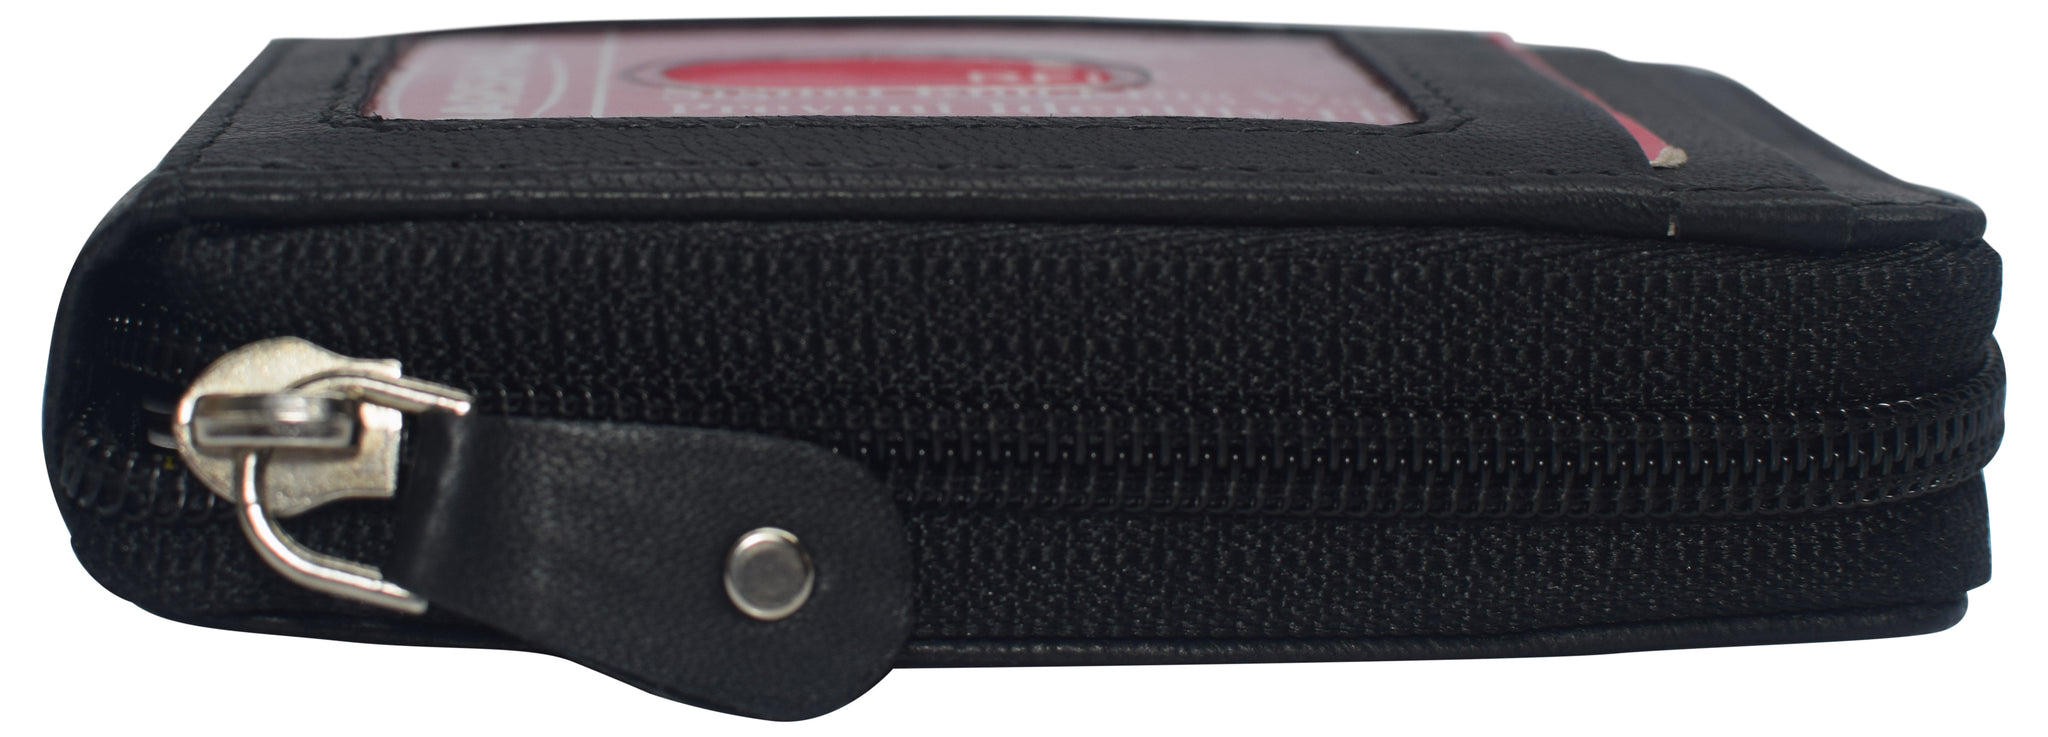 Genuine Leather Wallets For Men Credit Card Holder Coin Purse Zipper Pocket  Bag